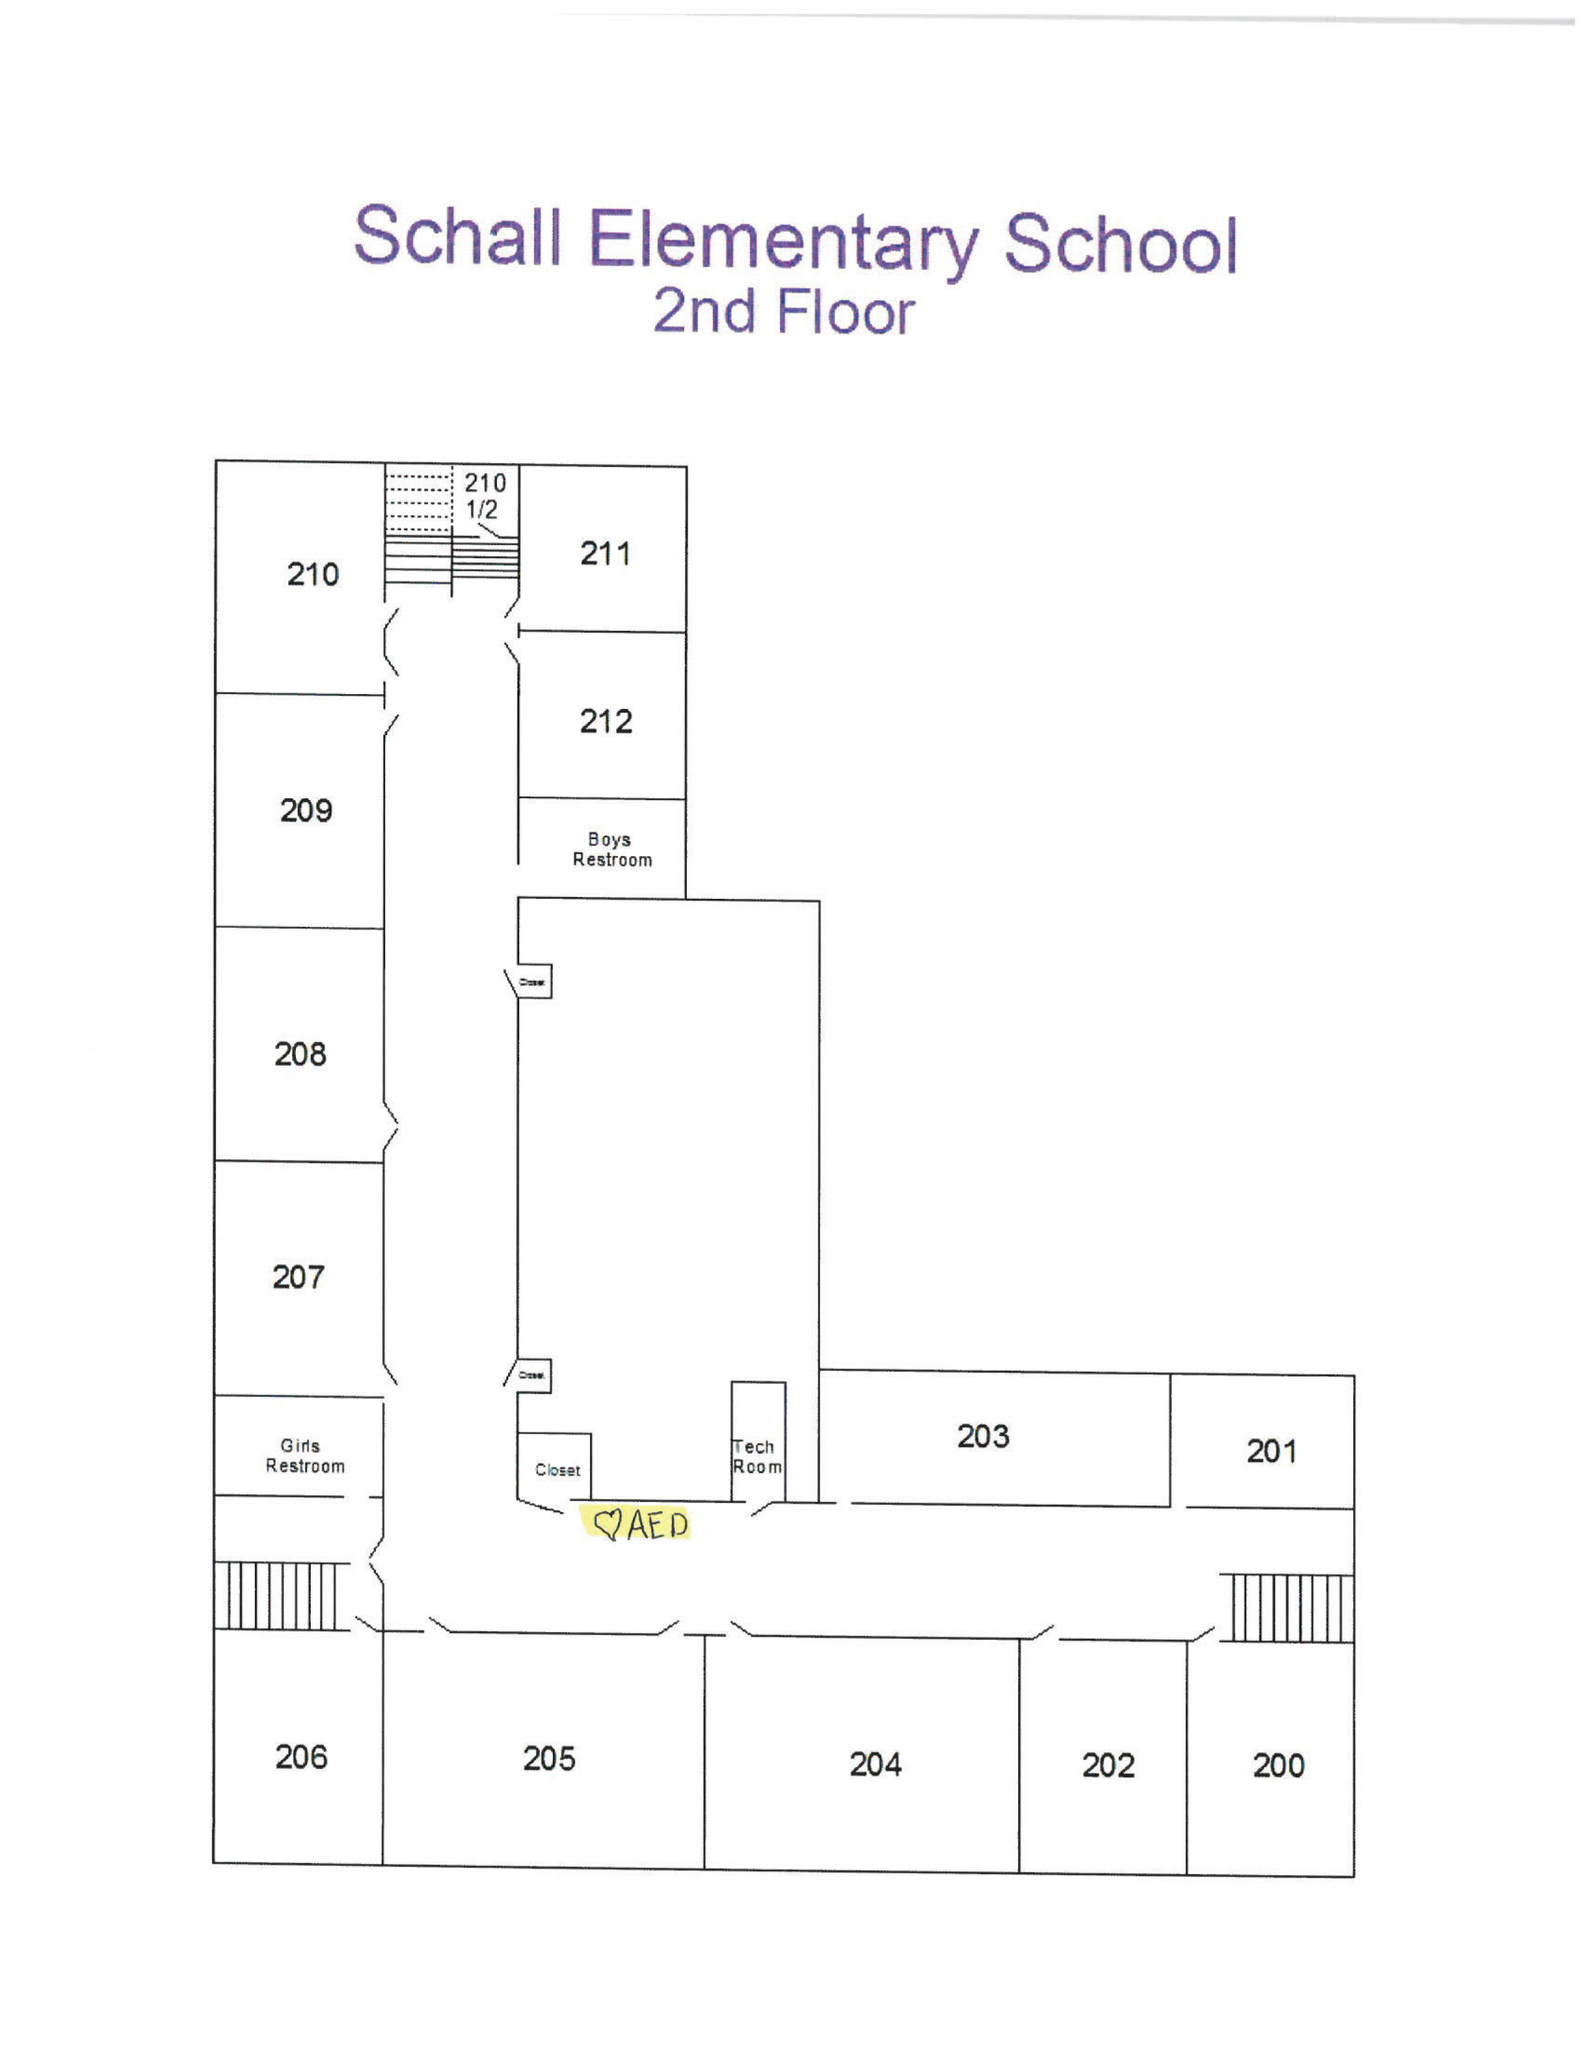 Schall floor 2 locator map